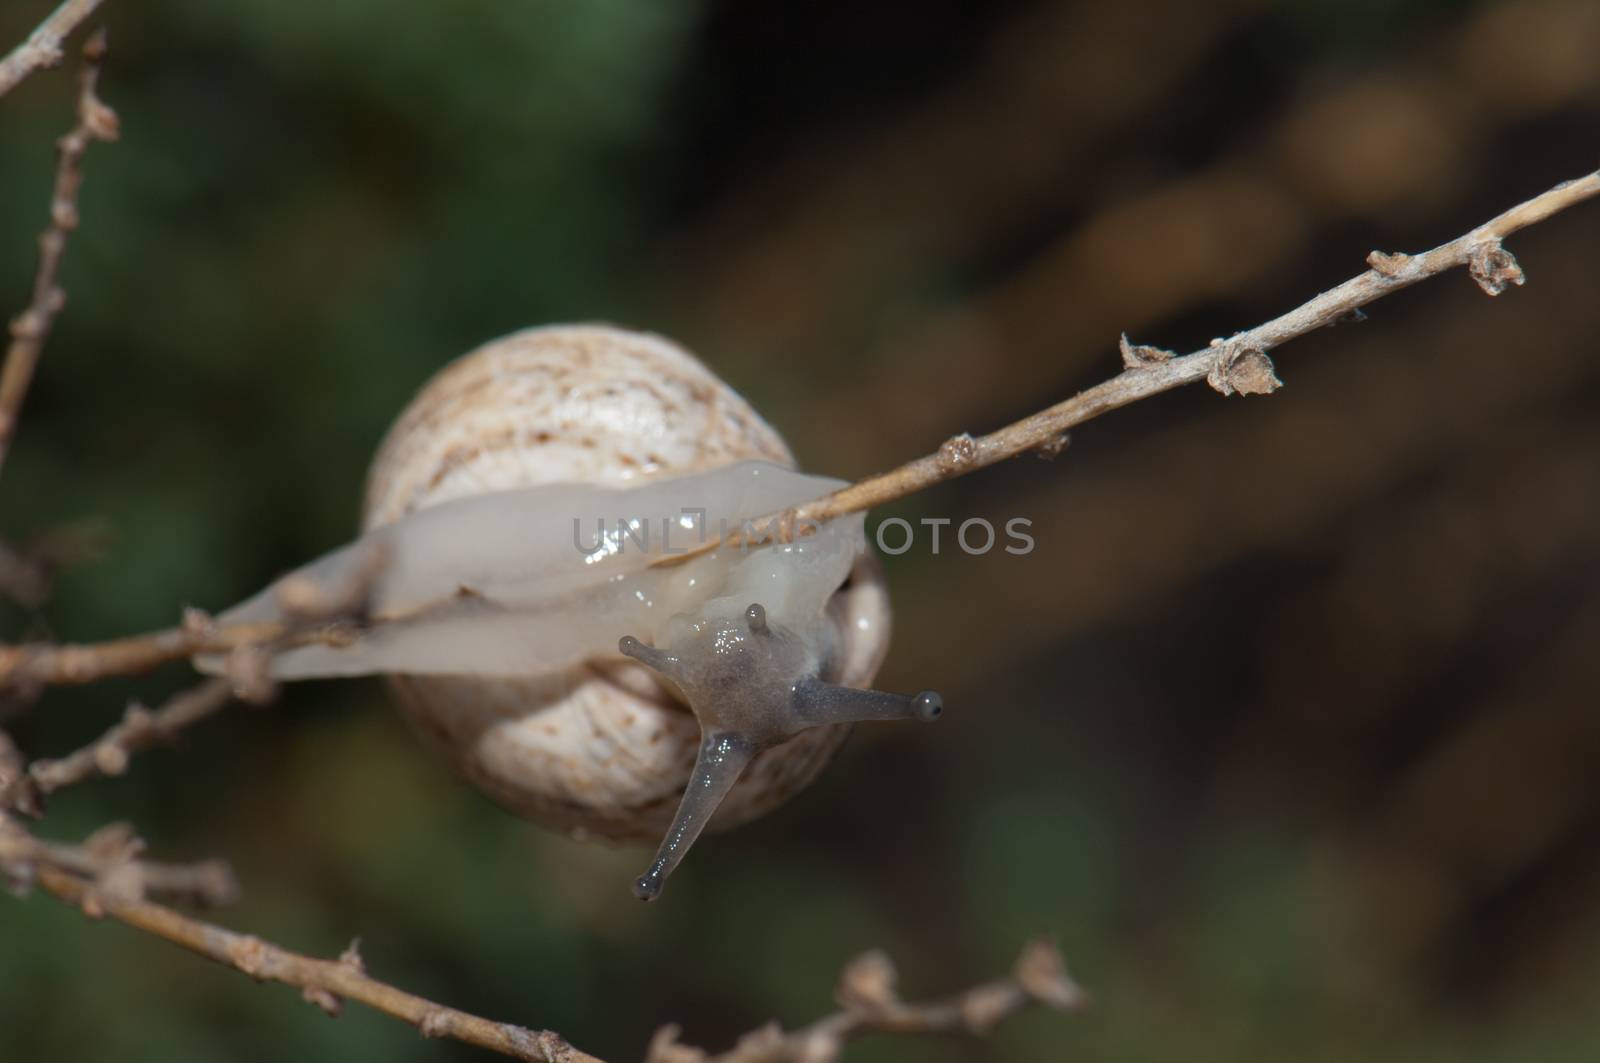 White garden snail. by VictorSuarez